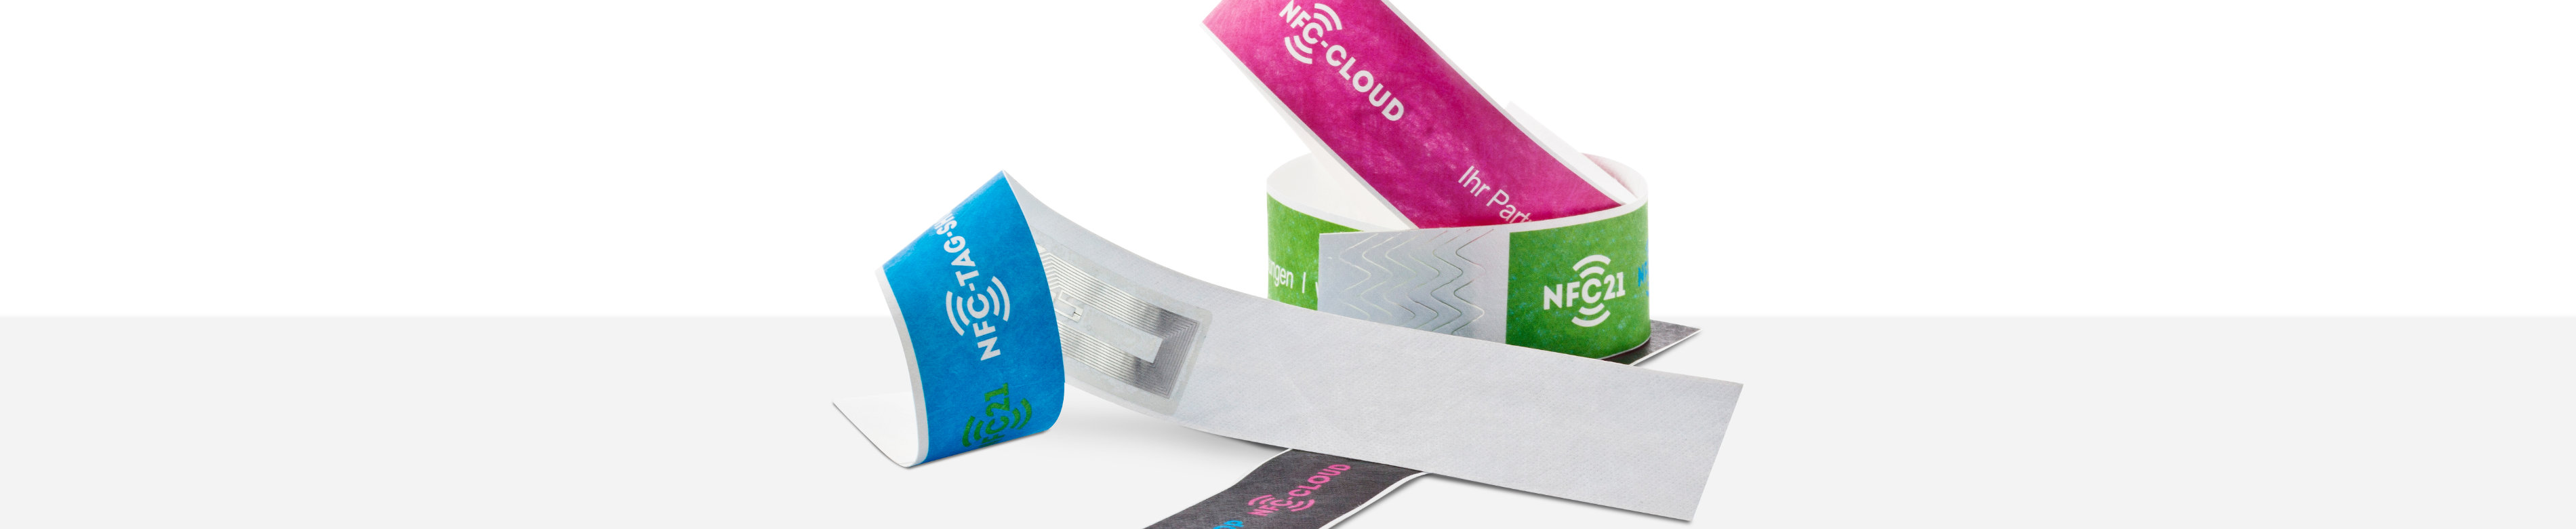 NFC Armbändern aus Papier in verschiedenen Farben